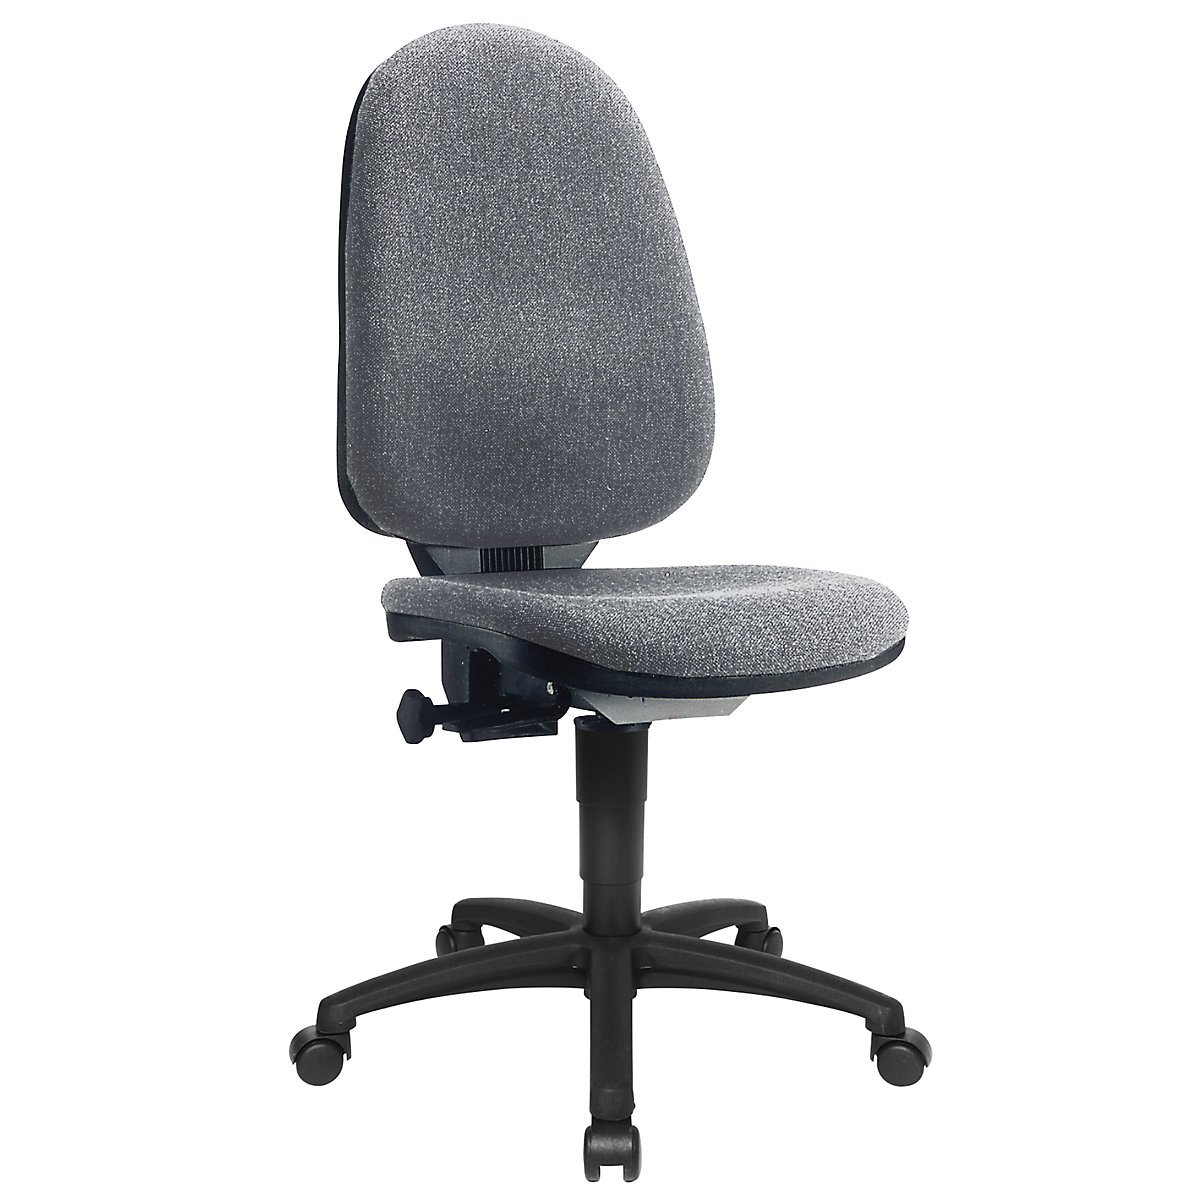 Standardna okretna stolica – Topstar, bez naslona za ruke, naslon za leđa 550 mm, postolje u crnoj, tkanina u sivoj boji, od 2 komada-5